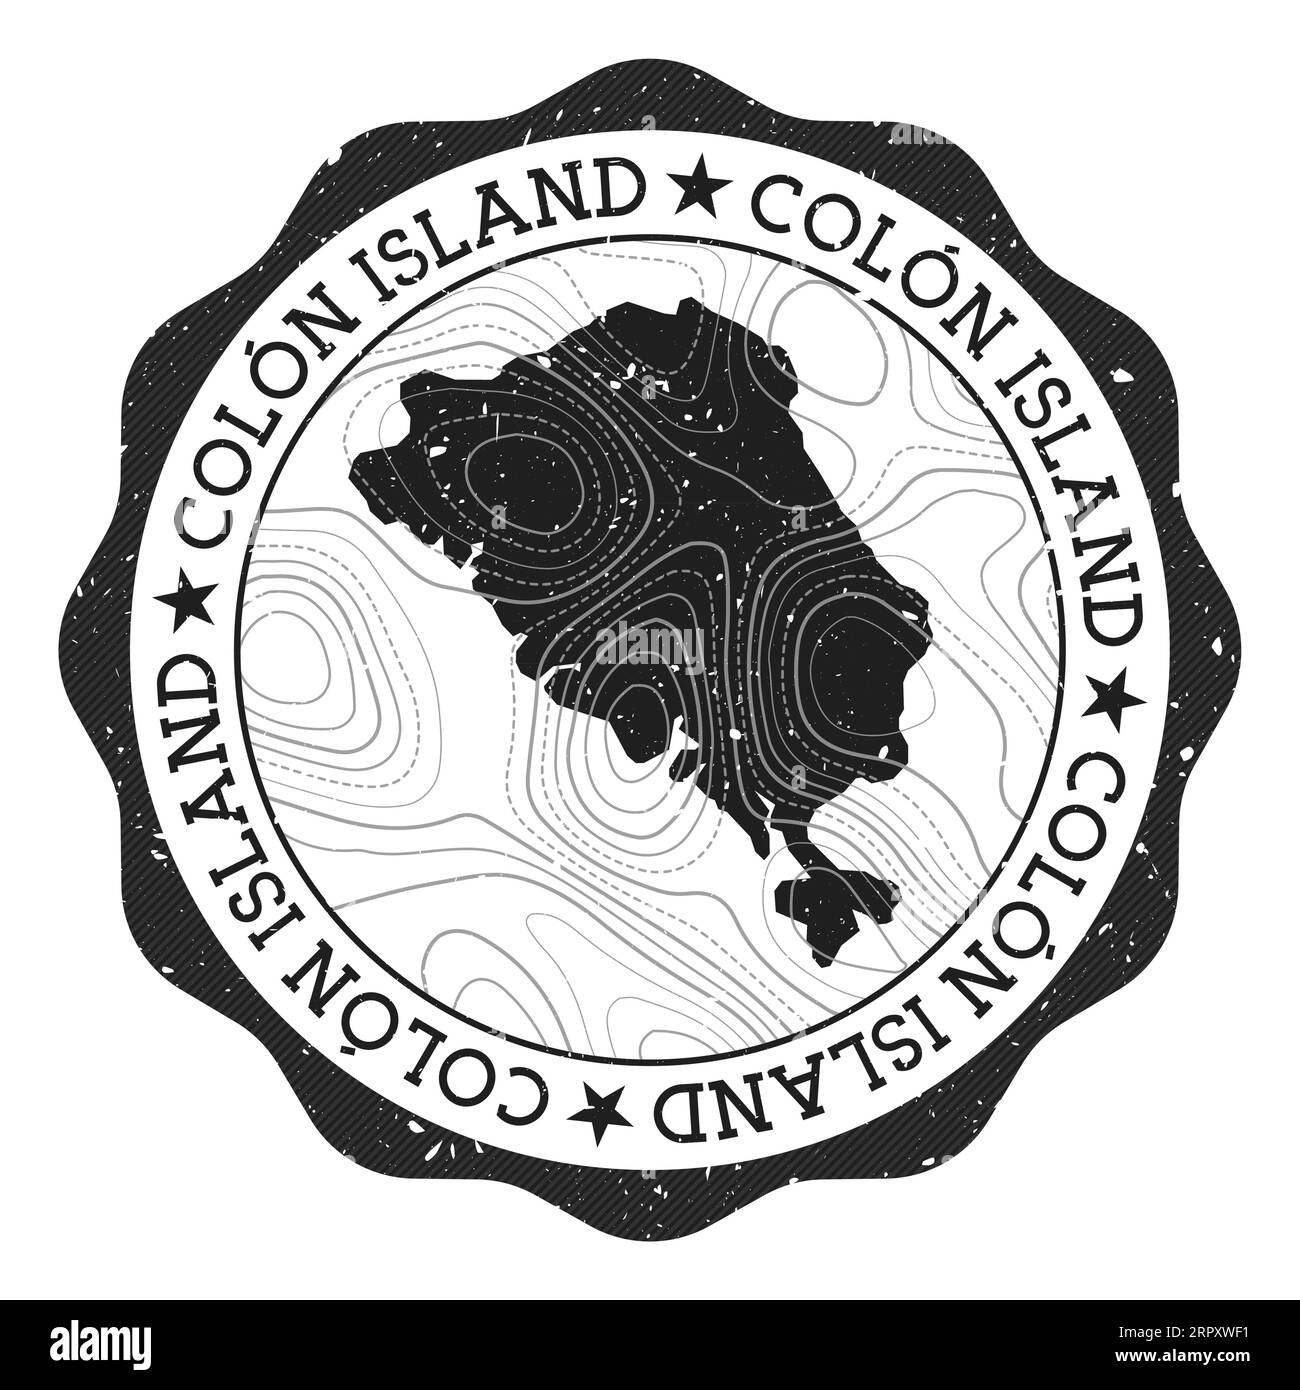 Colon Island Außenmarke. Runder Aufkleber mit Karte mit topographischen Isolinen. Vektorillustration. Kann als Insignia, Logo, Etikett, Aufkleber verwendet werden Stock Vektor